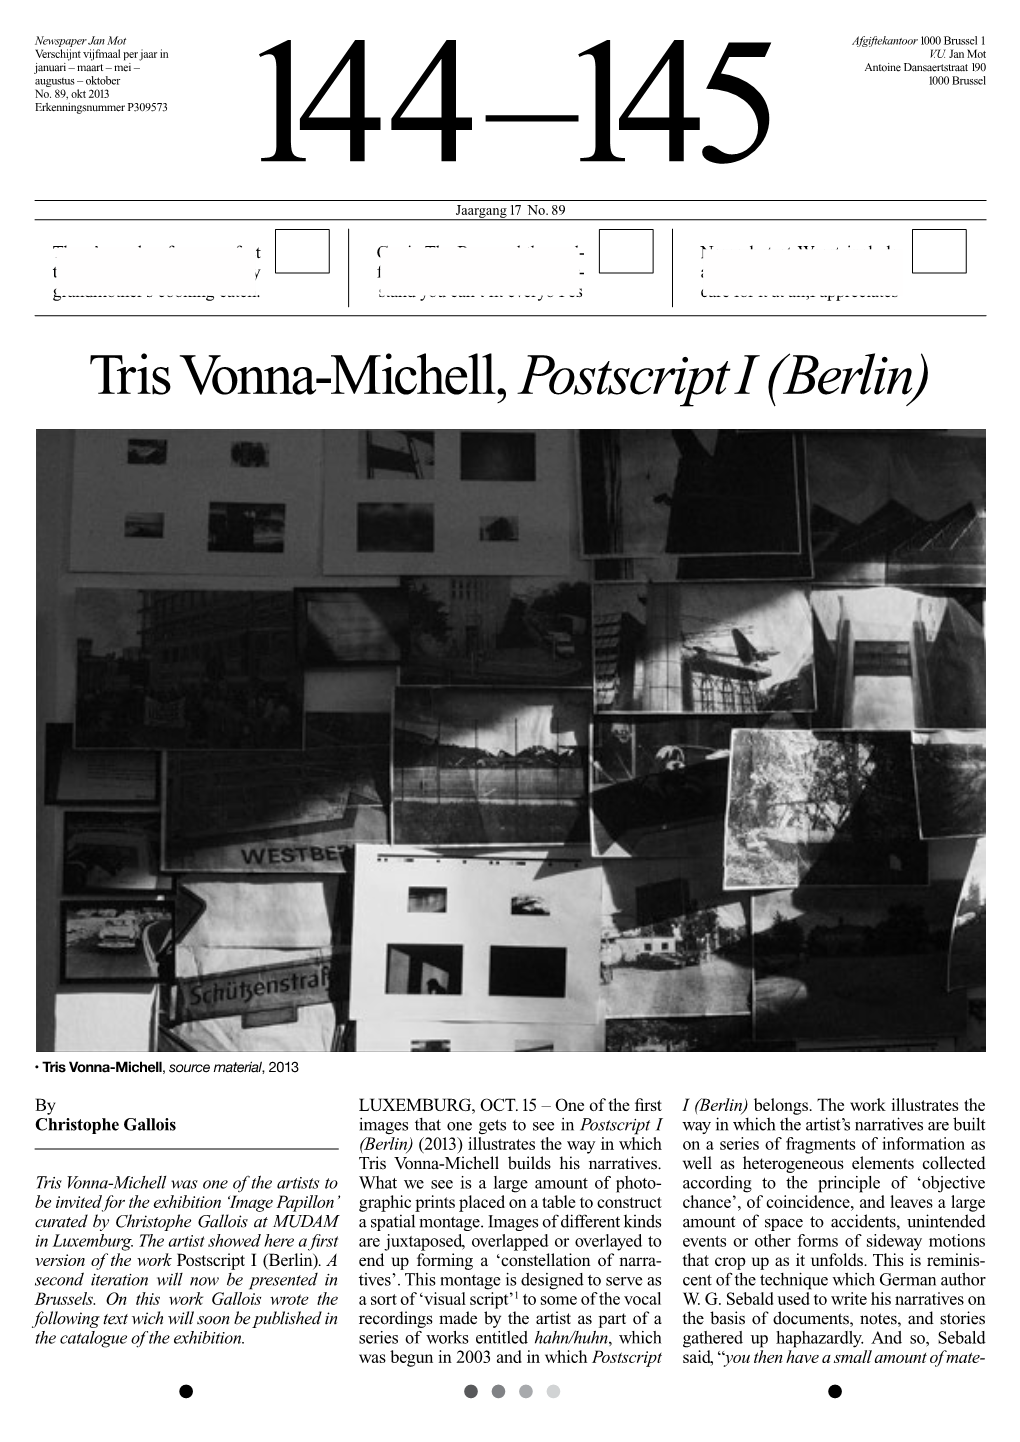 Tris Vonna-Michell, Postscript I (Berlin)